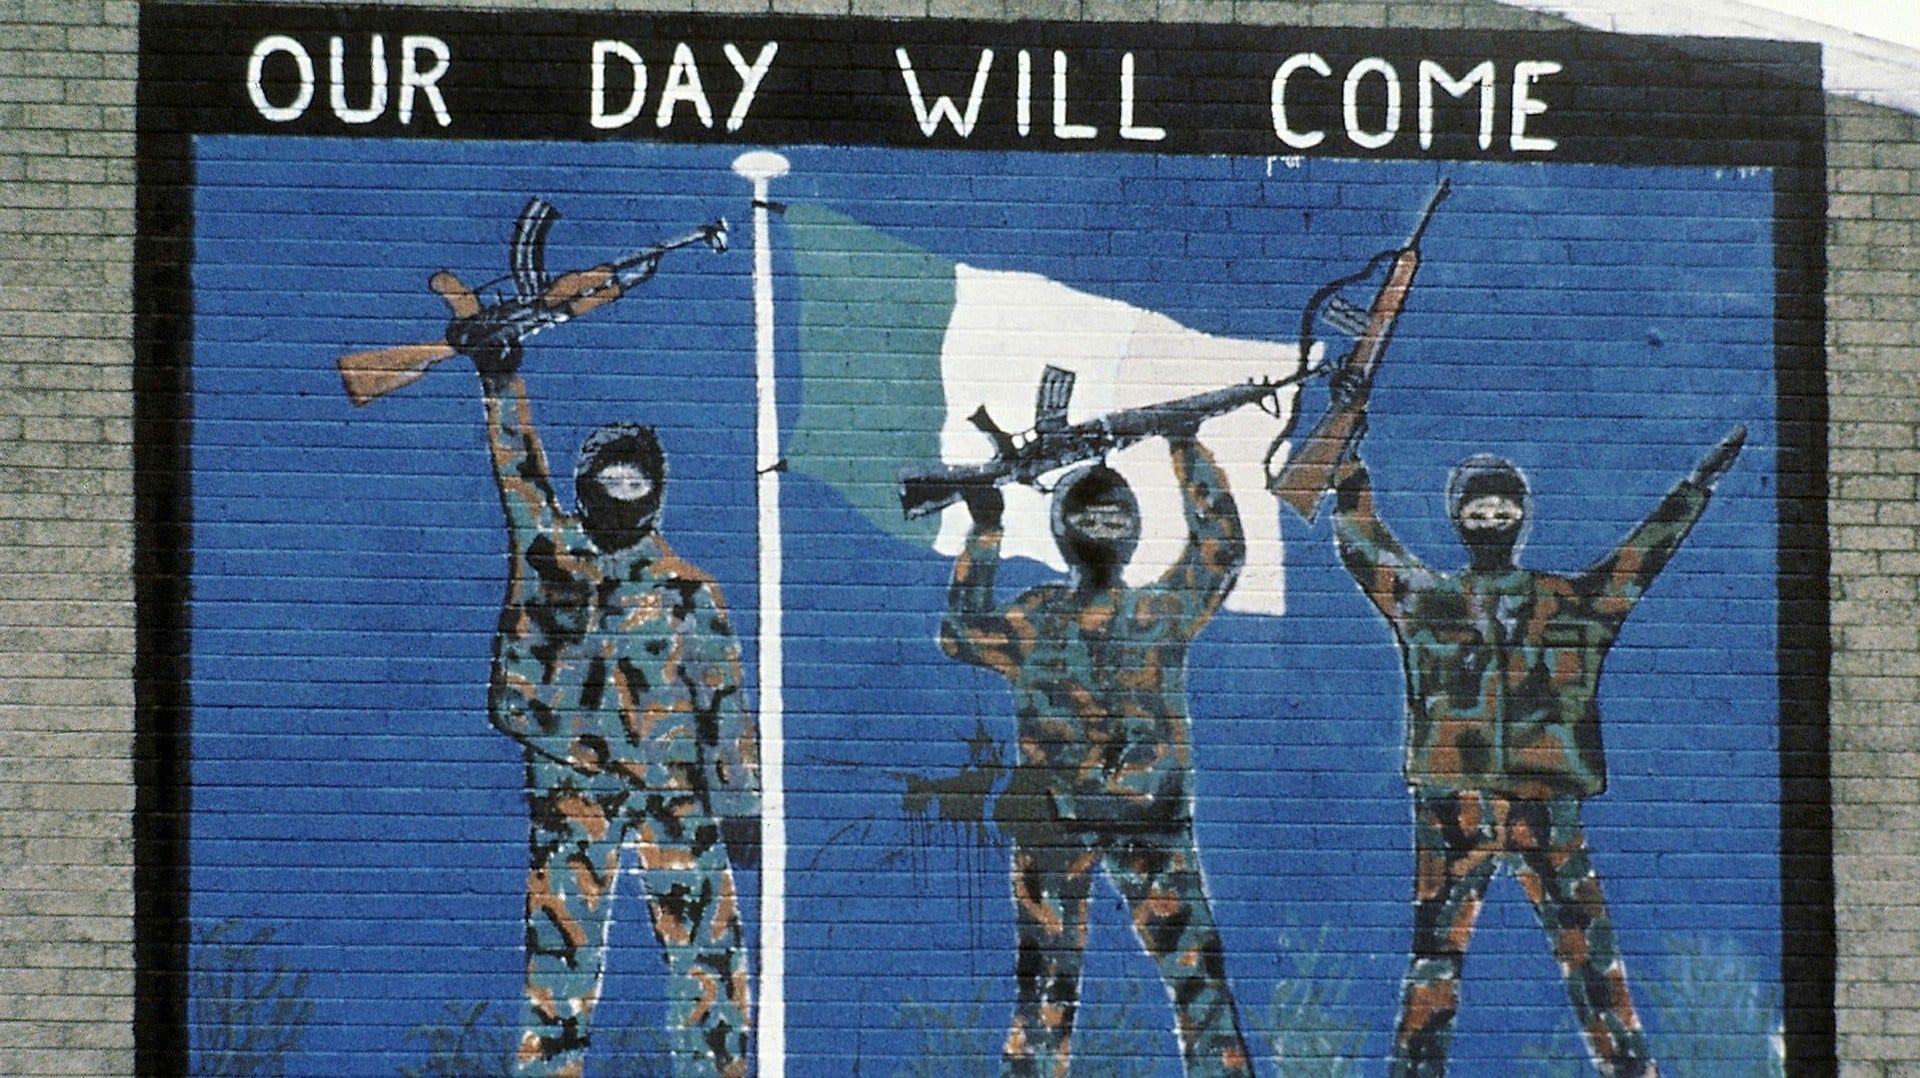 En muralmålning till stöd för IRA i en katolsk del av Belfast.